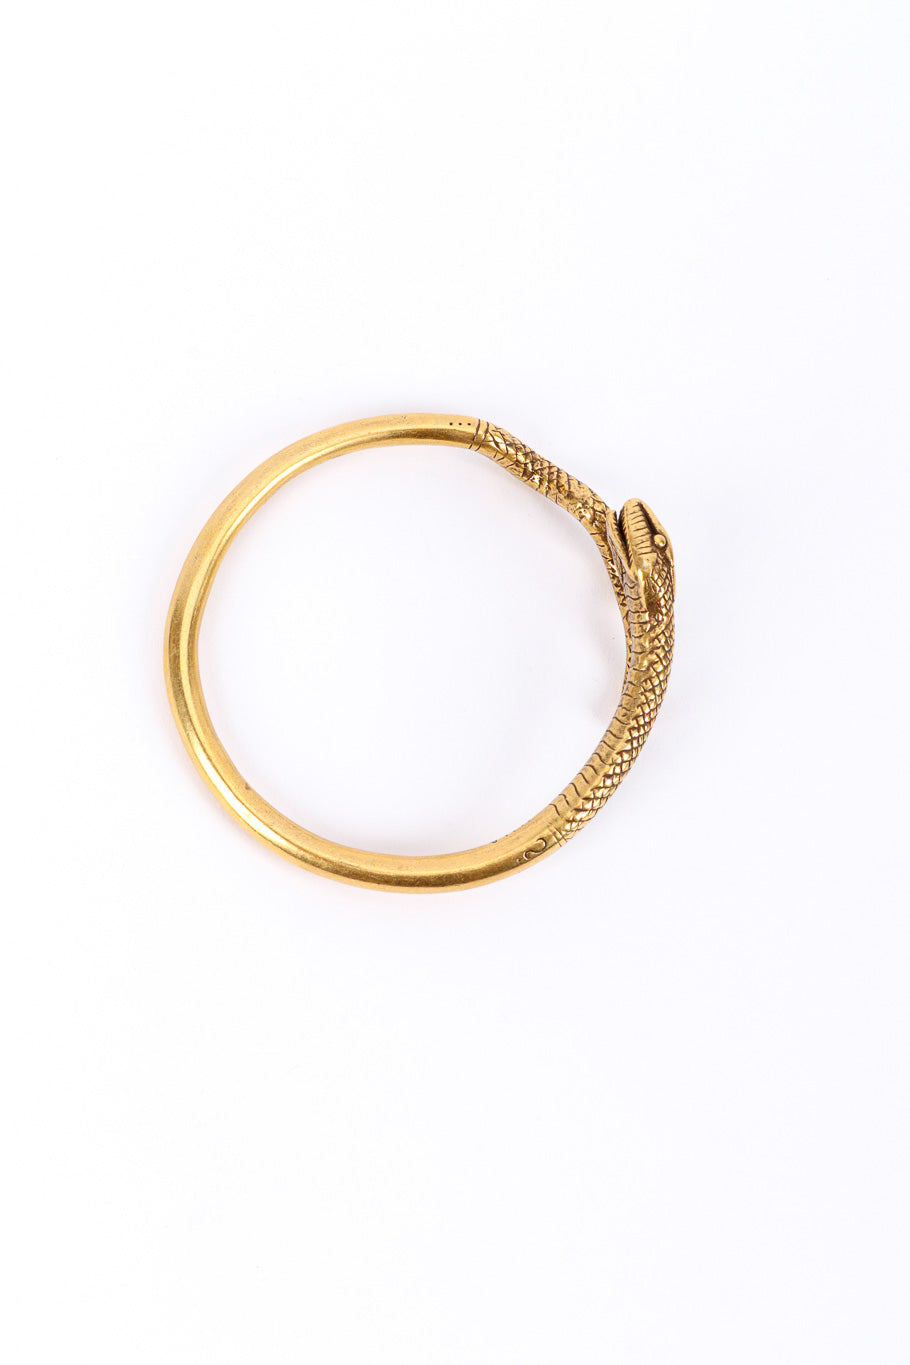 Metropolitan Museum of Art Serpent Spiral Bracelet top view @recessla